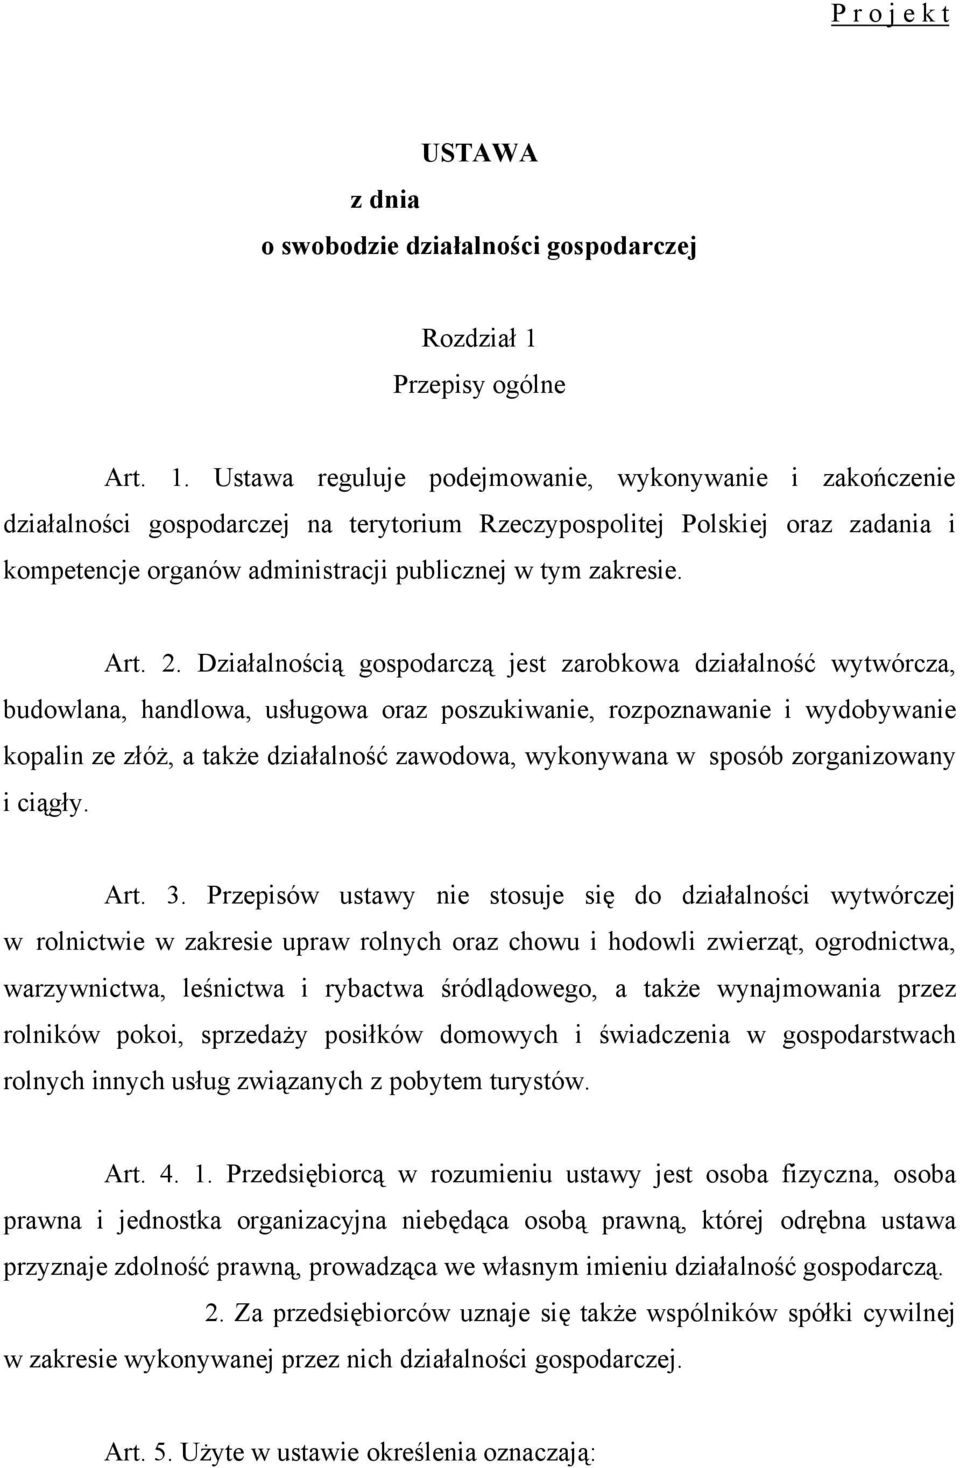 Ustawa reguluje podejmowanie, wykonywanie i zakończenie działalności gospodarczej na terytorium Rzeczypospolitej Polskiej oraz zadania i kompetencje organów administracji publicznej w tym zakresie.